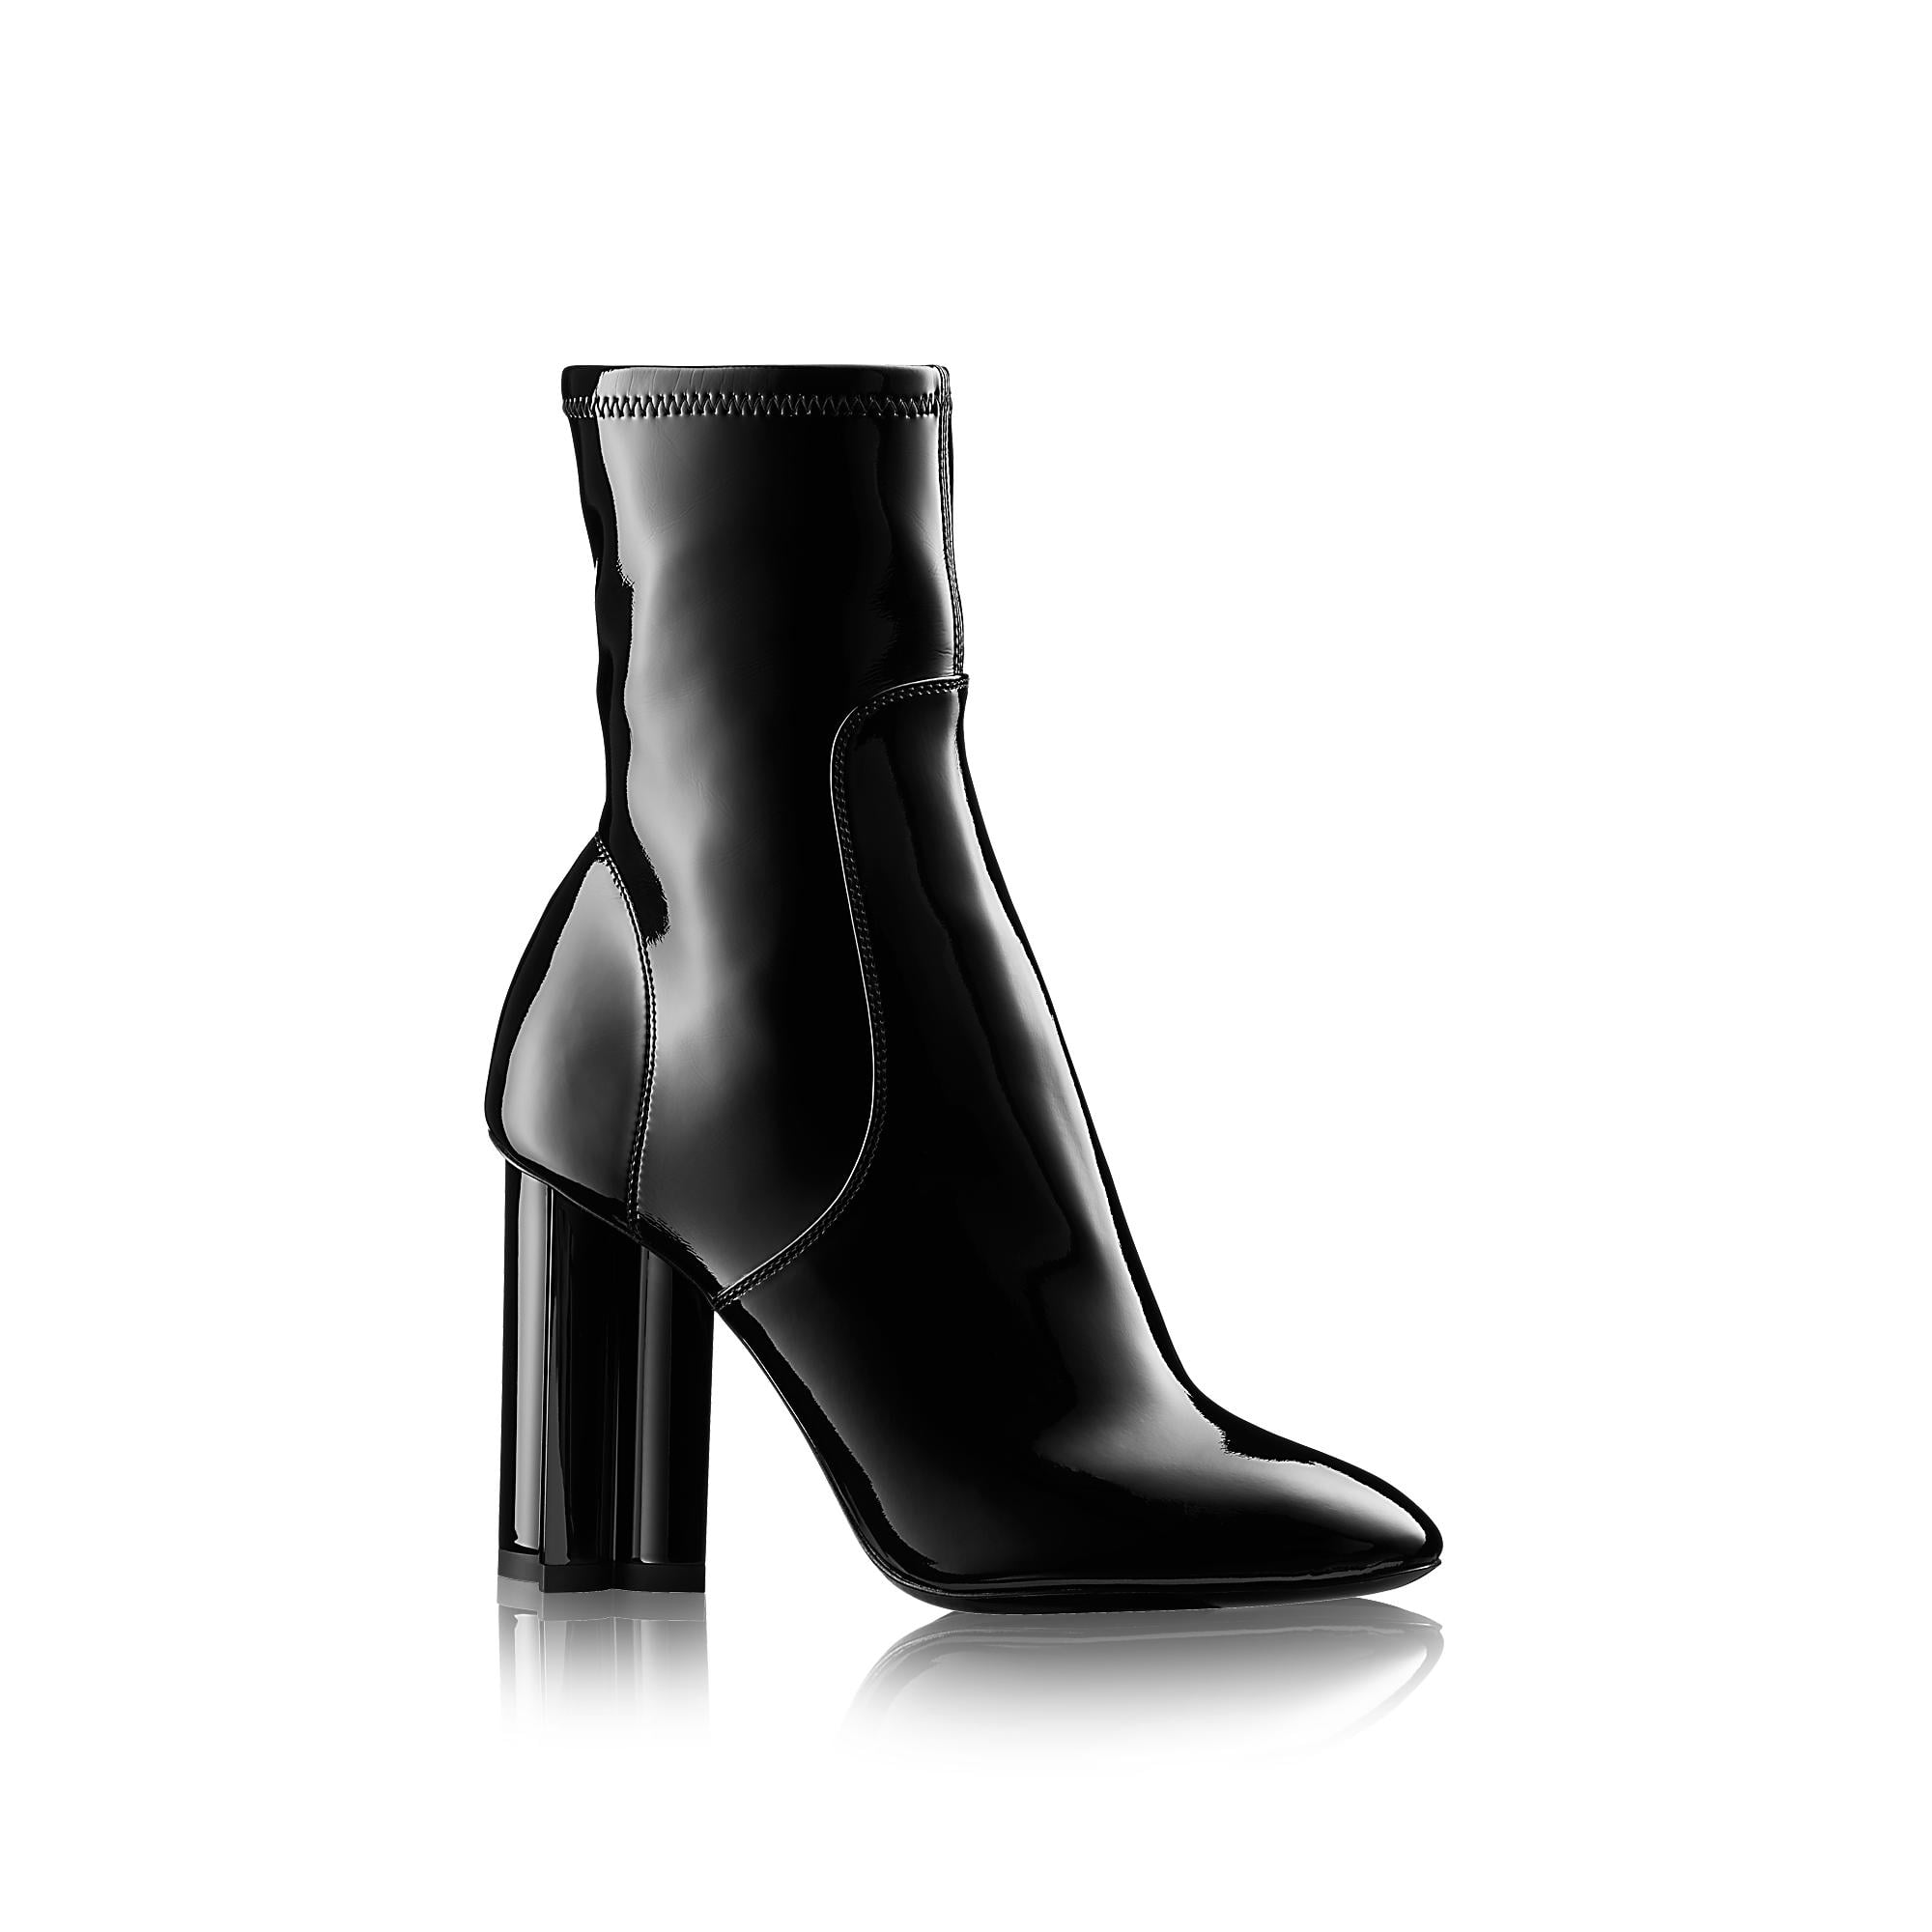 Selena Gomez Falls Flat In Inelegant Louis Vuitton Boots